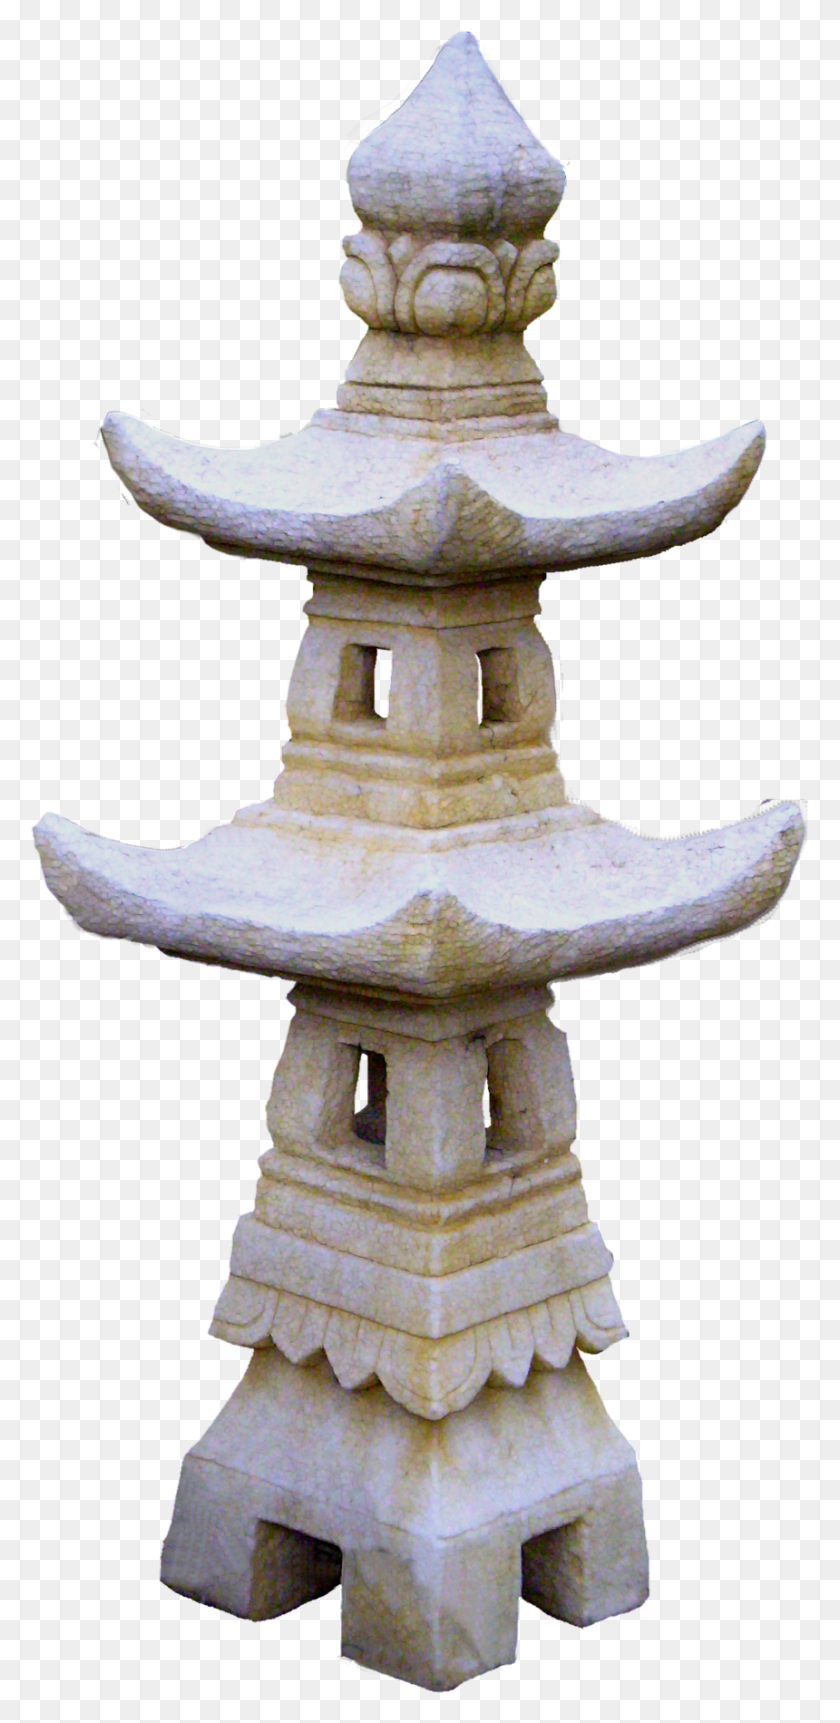 860x1834 Descargar Png Linterna De Jardín De Piedra China Linternas De Jardín Japonés Pagoda, Arqueología, Boca De Incendios, Hidrante Hd Png